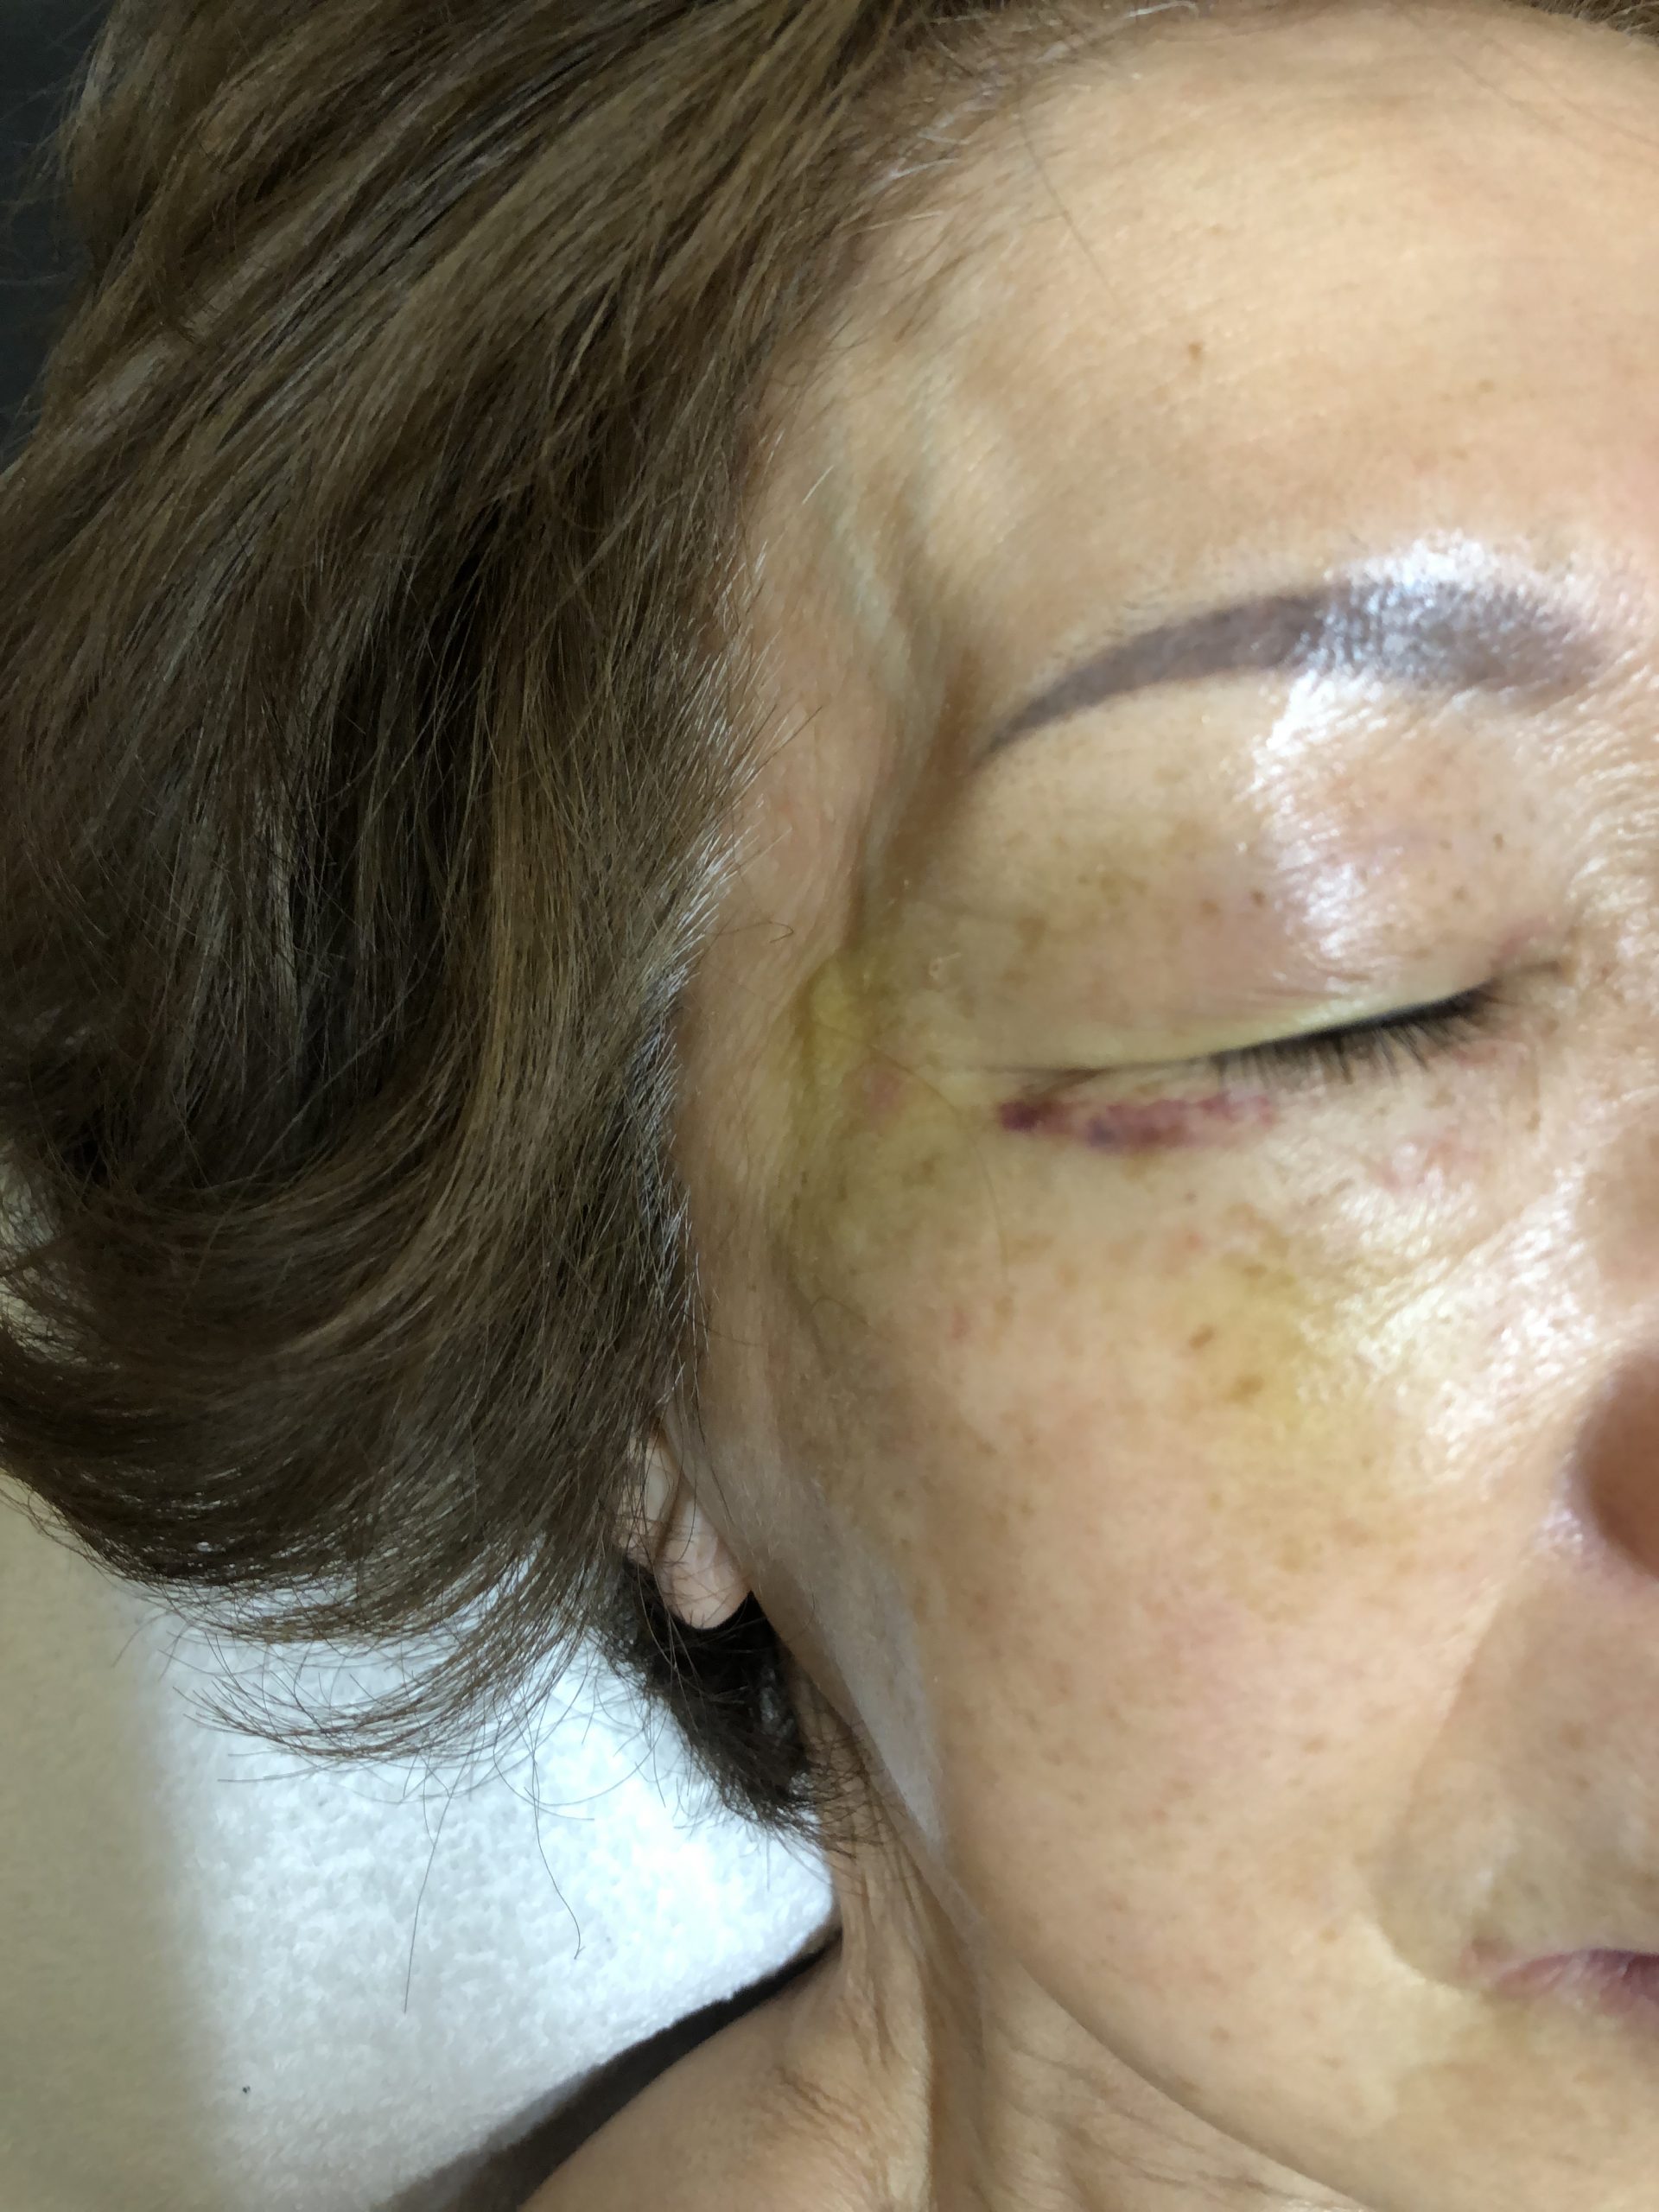 W・Hさん77歳女性、顔面打撲のコウケントー光線療法